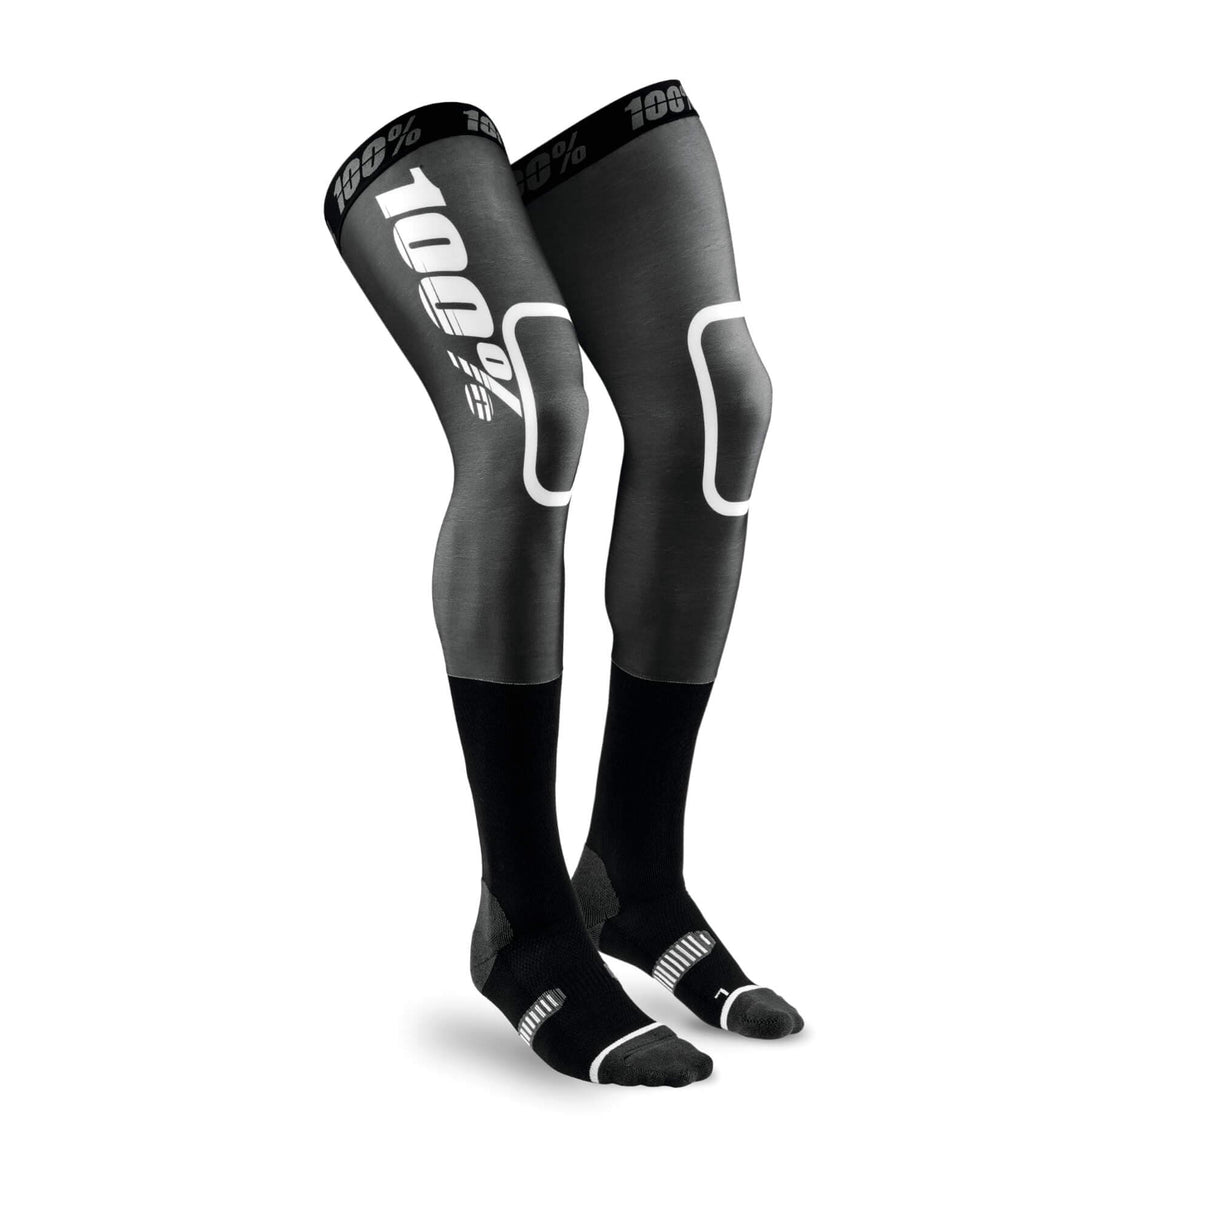 100% REV MX Knee Brace Socks Black / White S/M